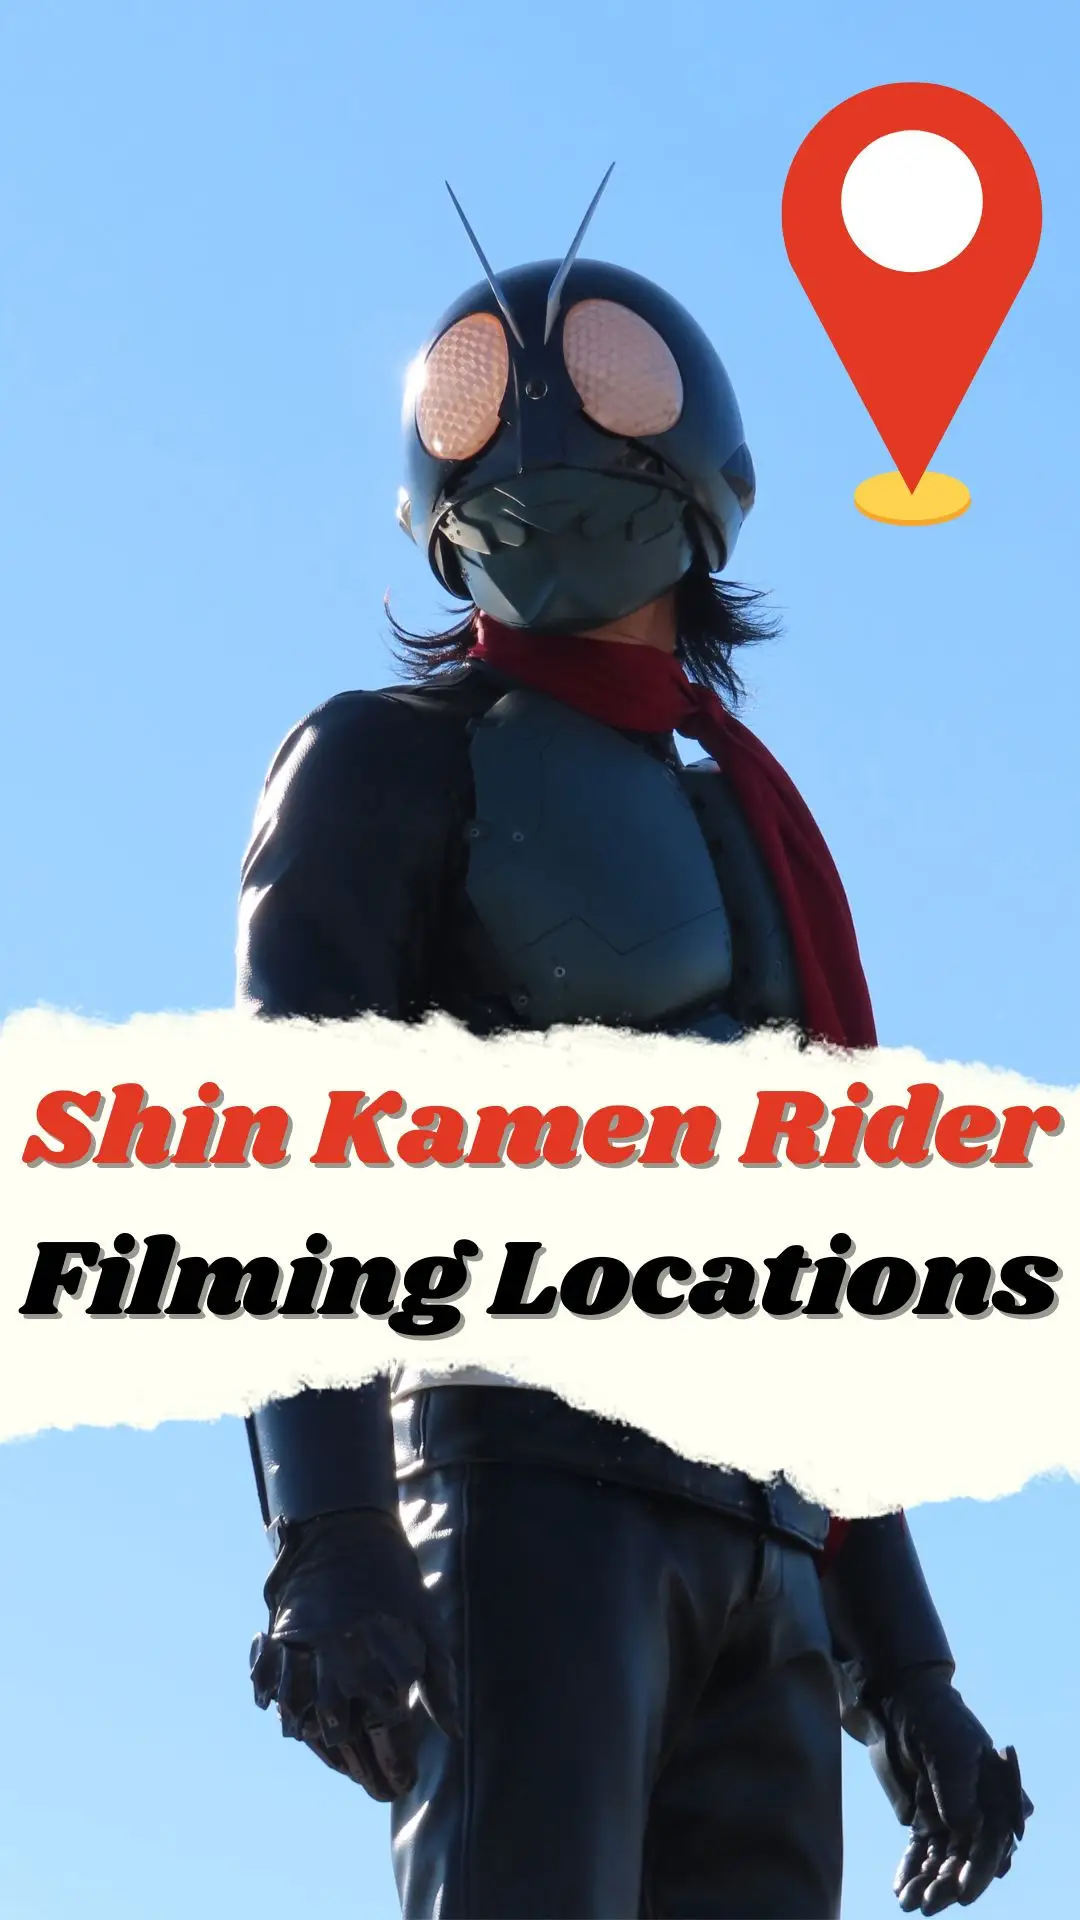 Shin Kamen Rider Filming Locations